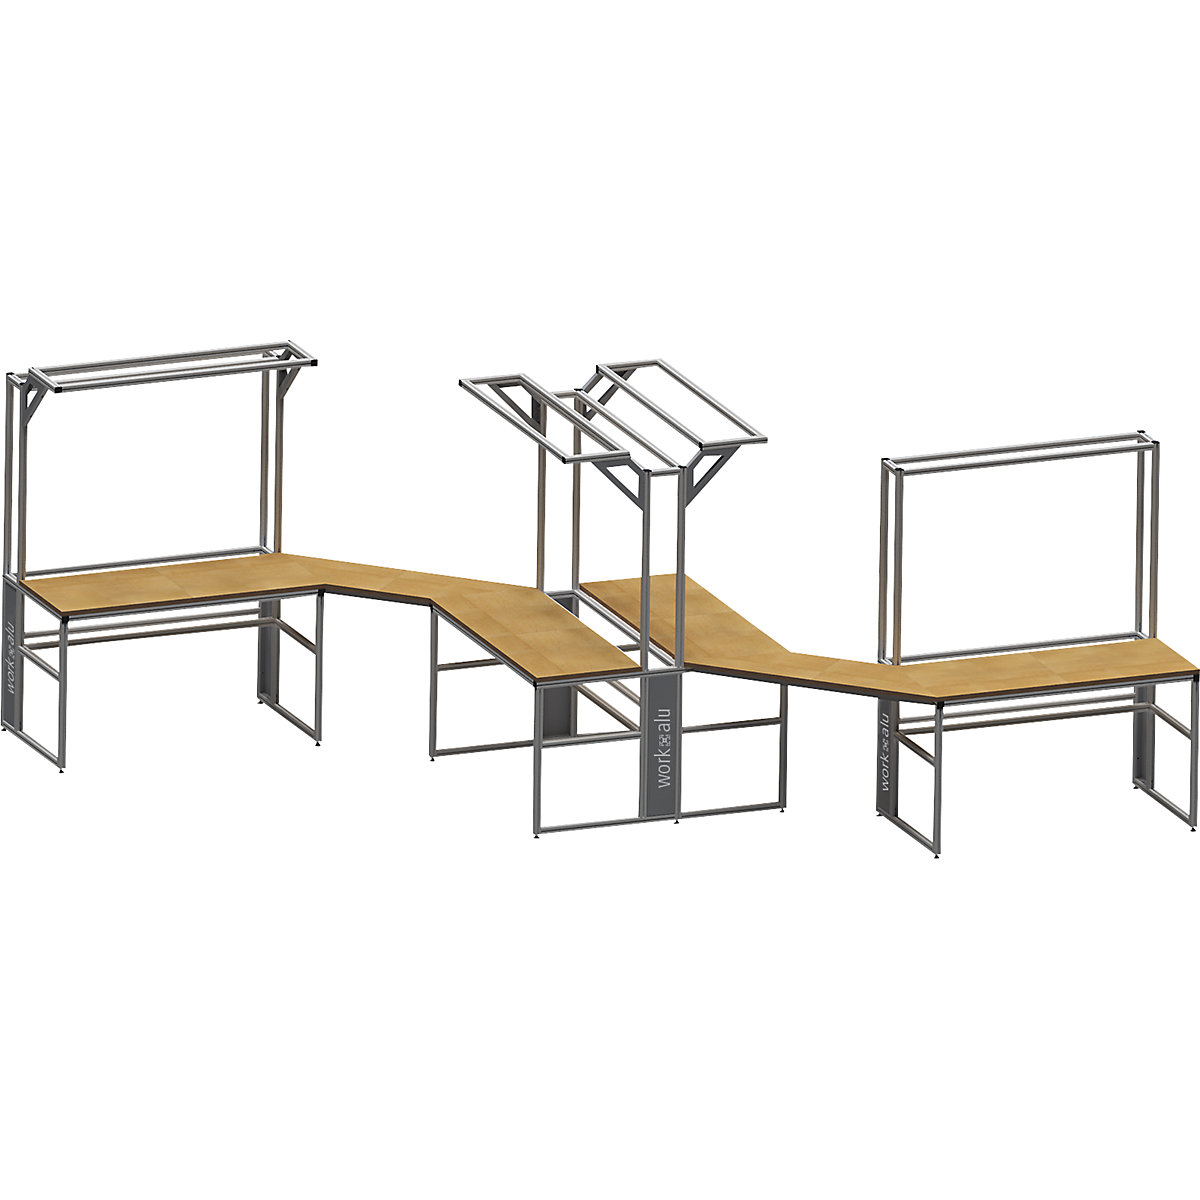 Stół warsztatowy aluminiowy workalu®, szkielet podstawowy – bedrunka hirth (Zdjęcie produktu 4)-3